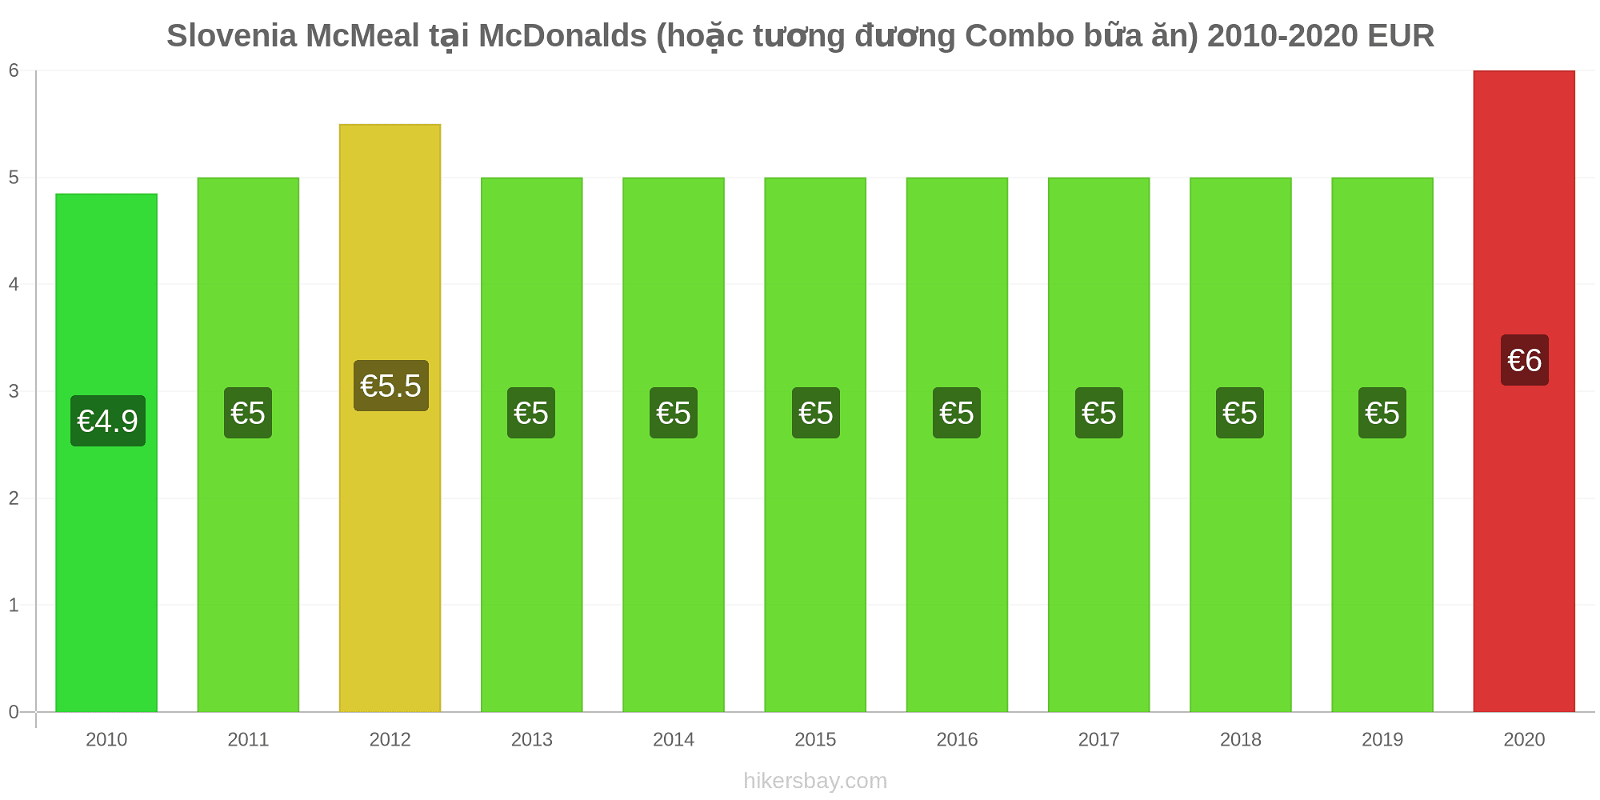 Slovenia thay đổi giá McMeal tại McDonalds (hoặc tương đương Combo bữa ăn) hikersbay.com